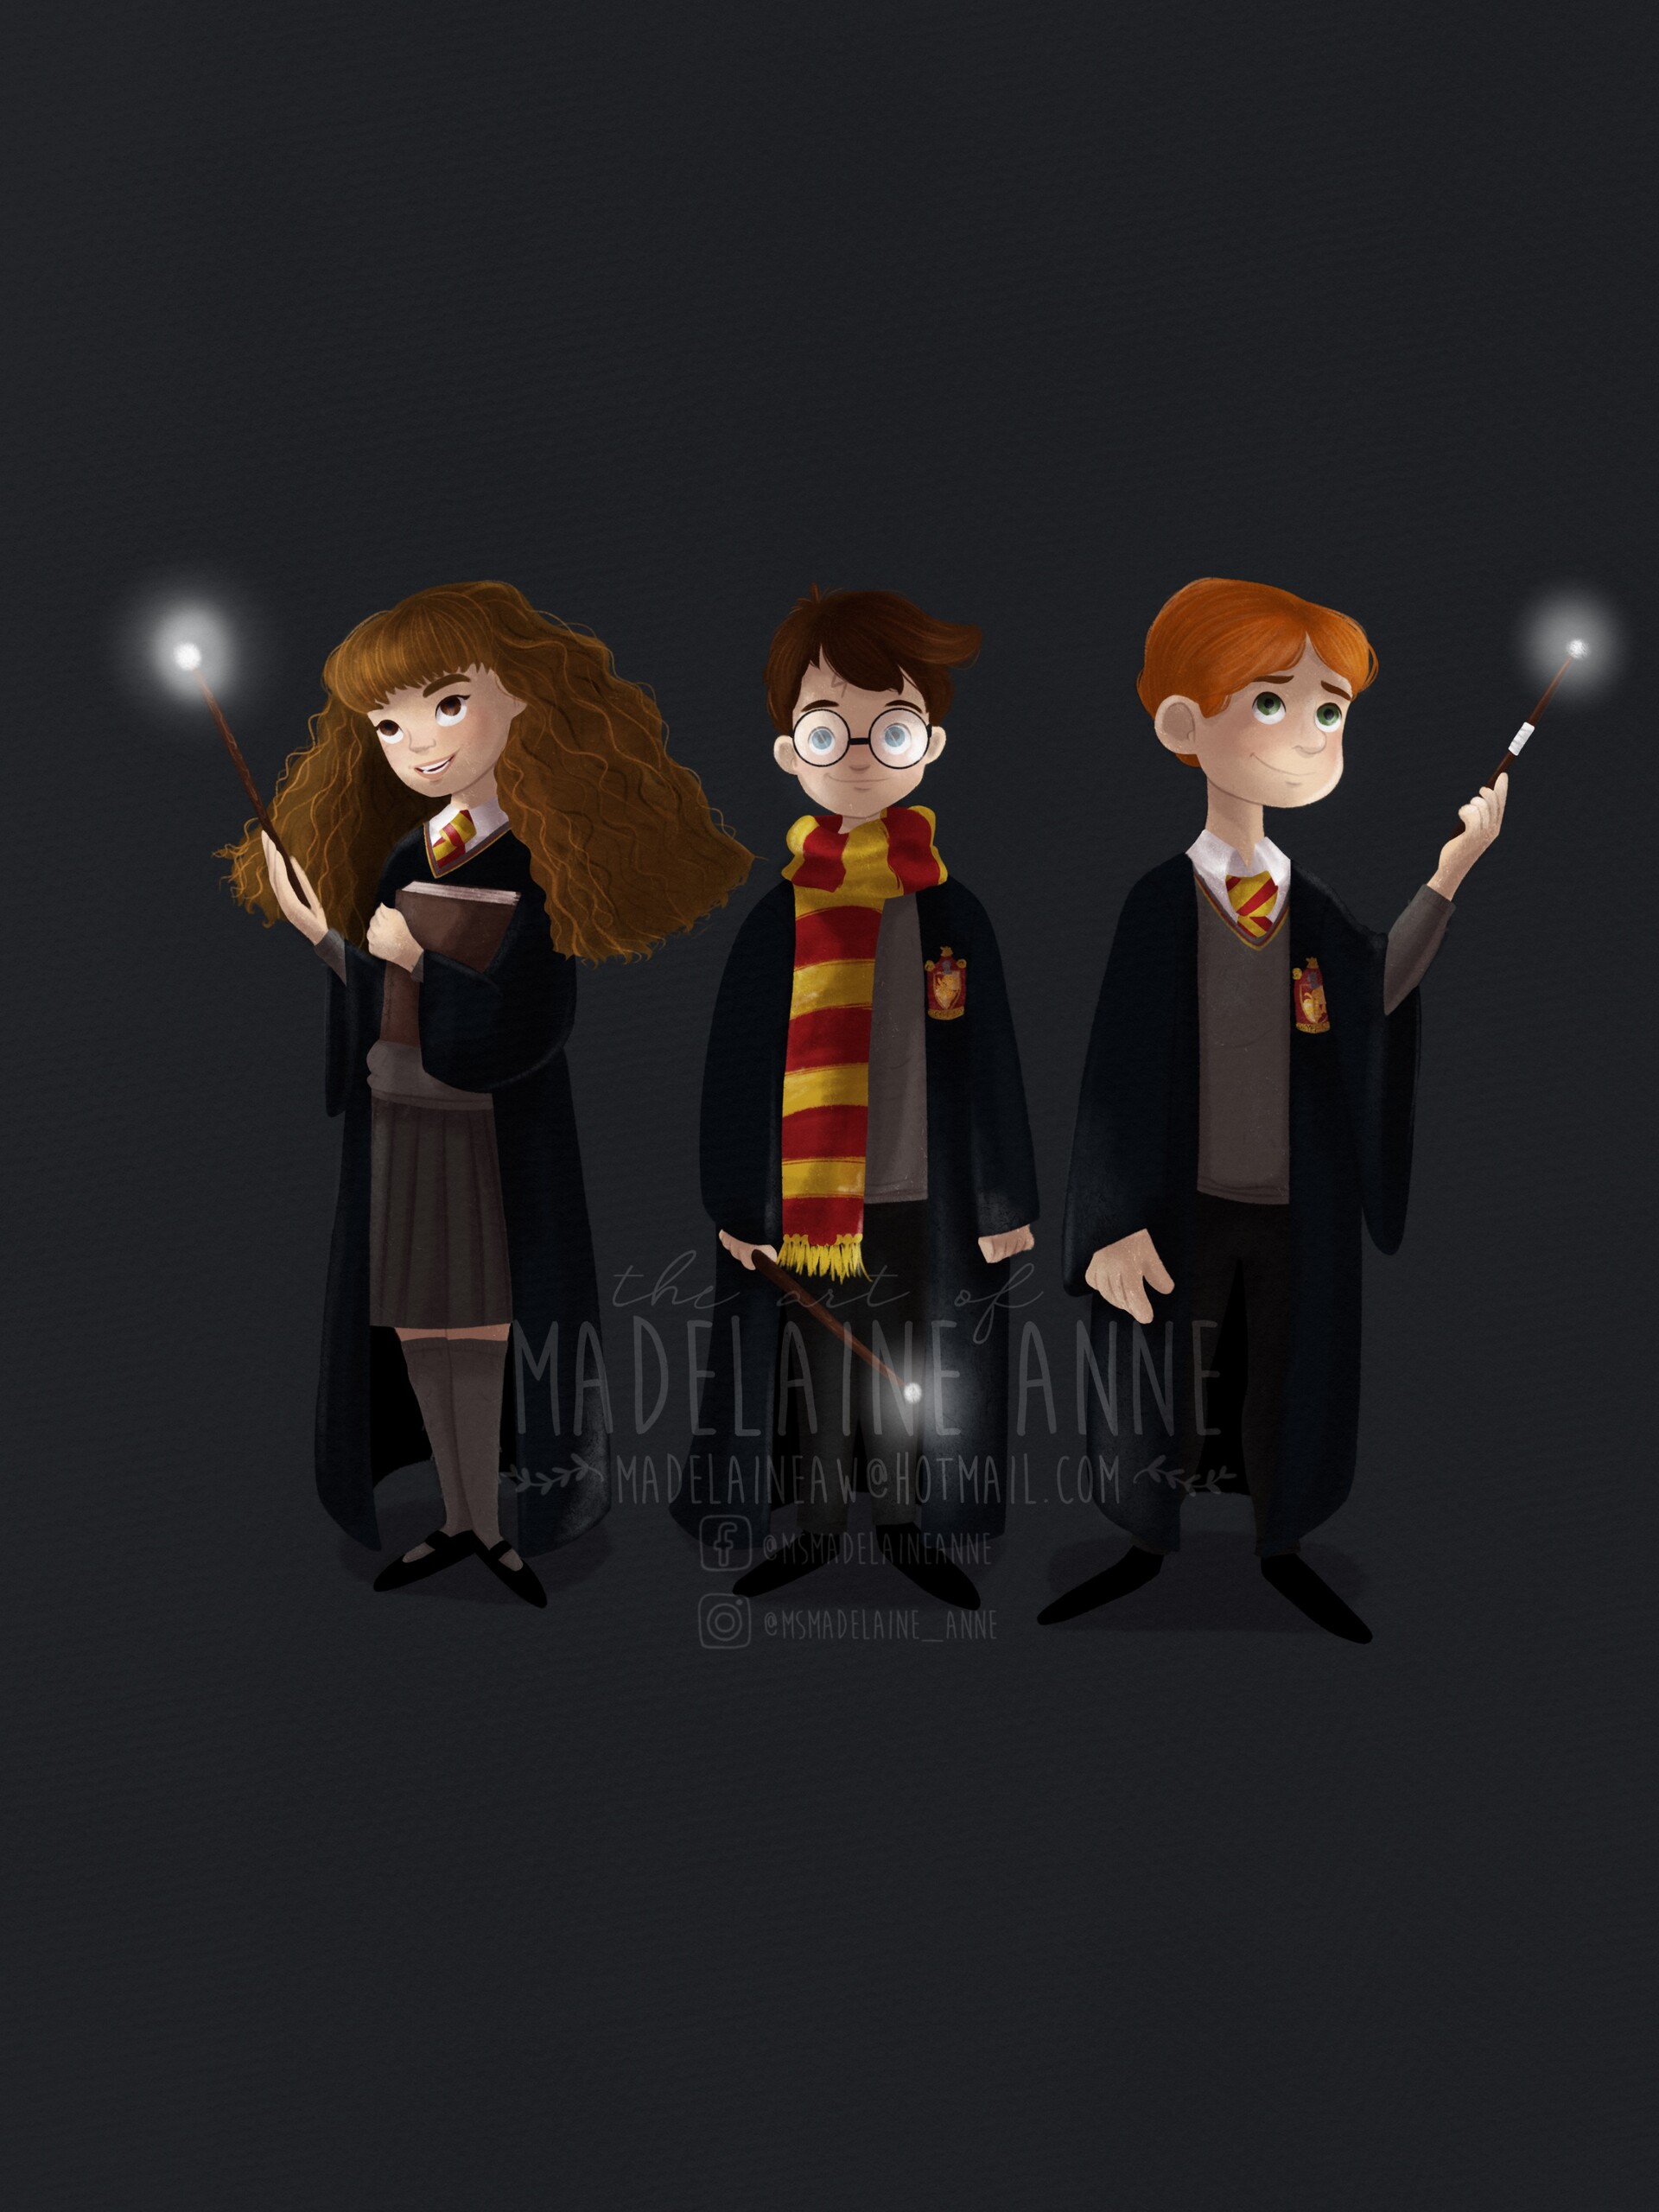 hermione and ron fan art